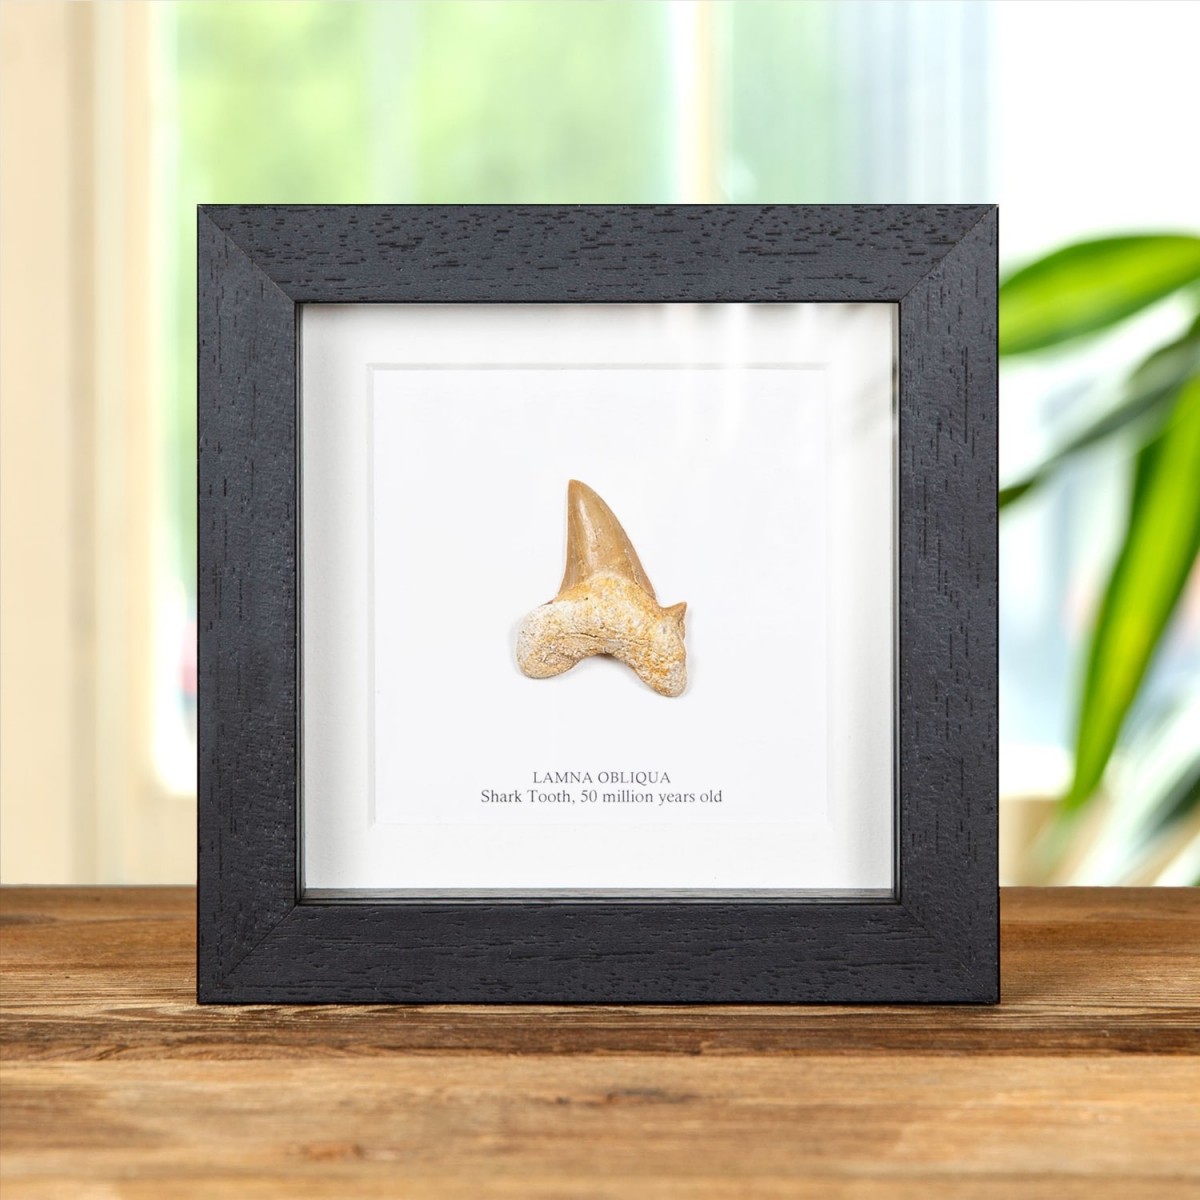 Minibeast Shark Tooth (Lamna obliqua) Fossil in Box Frame